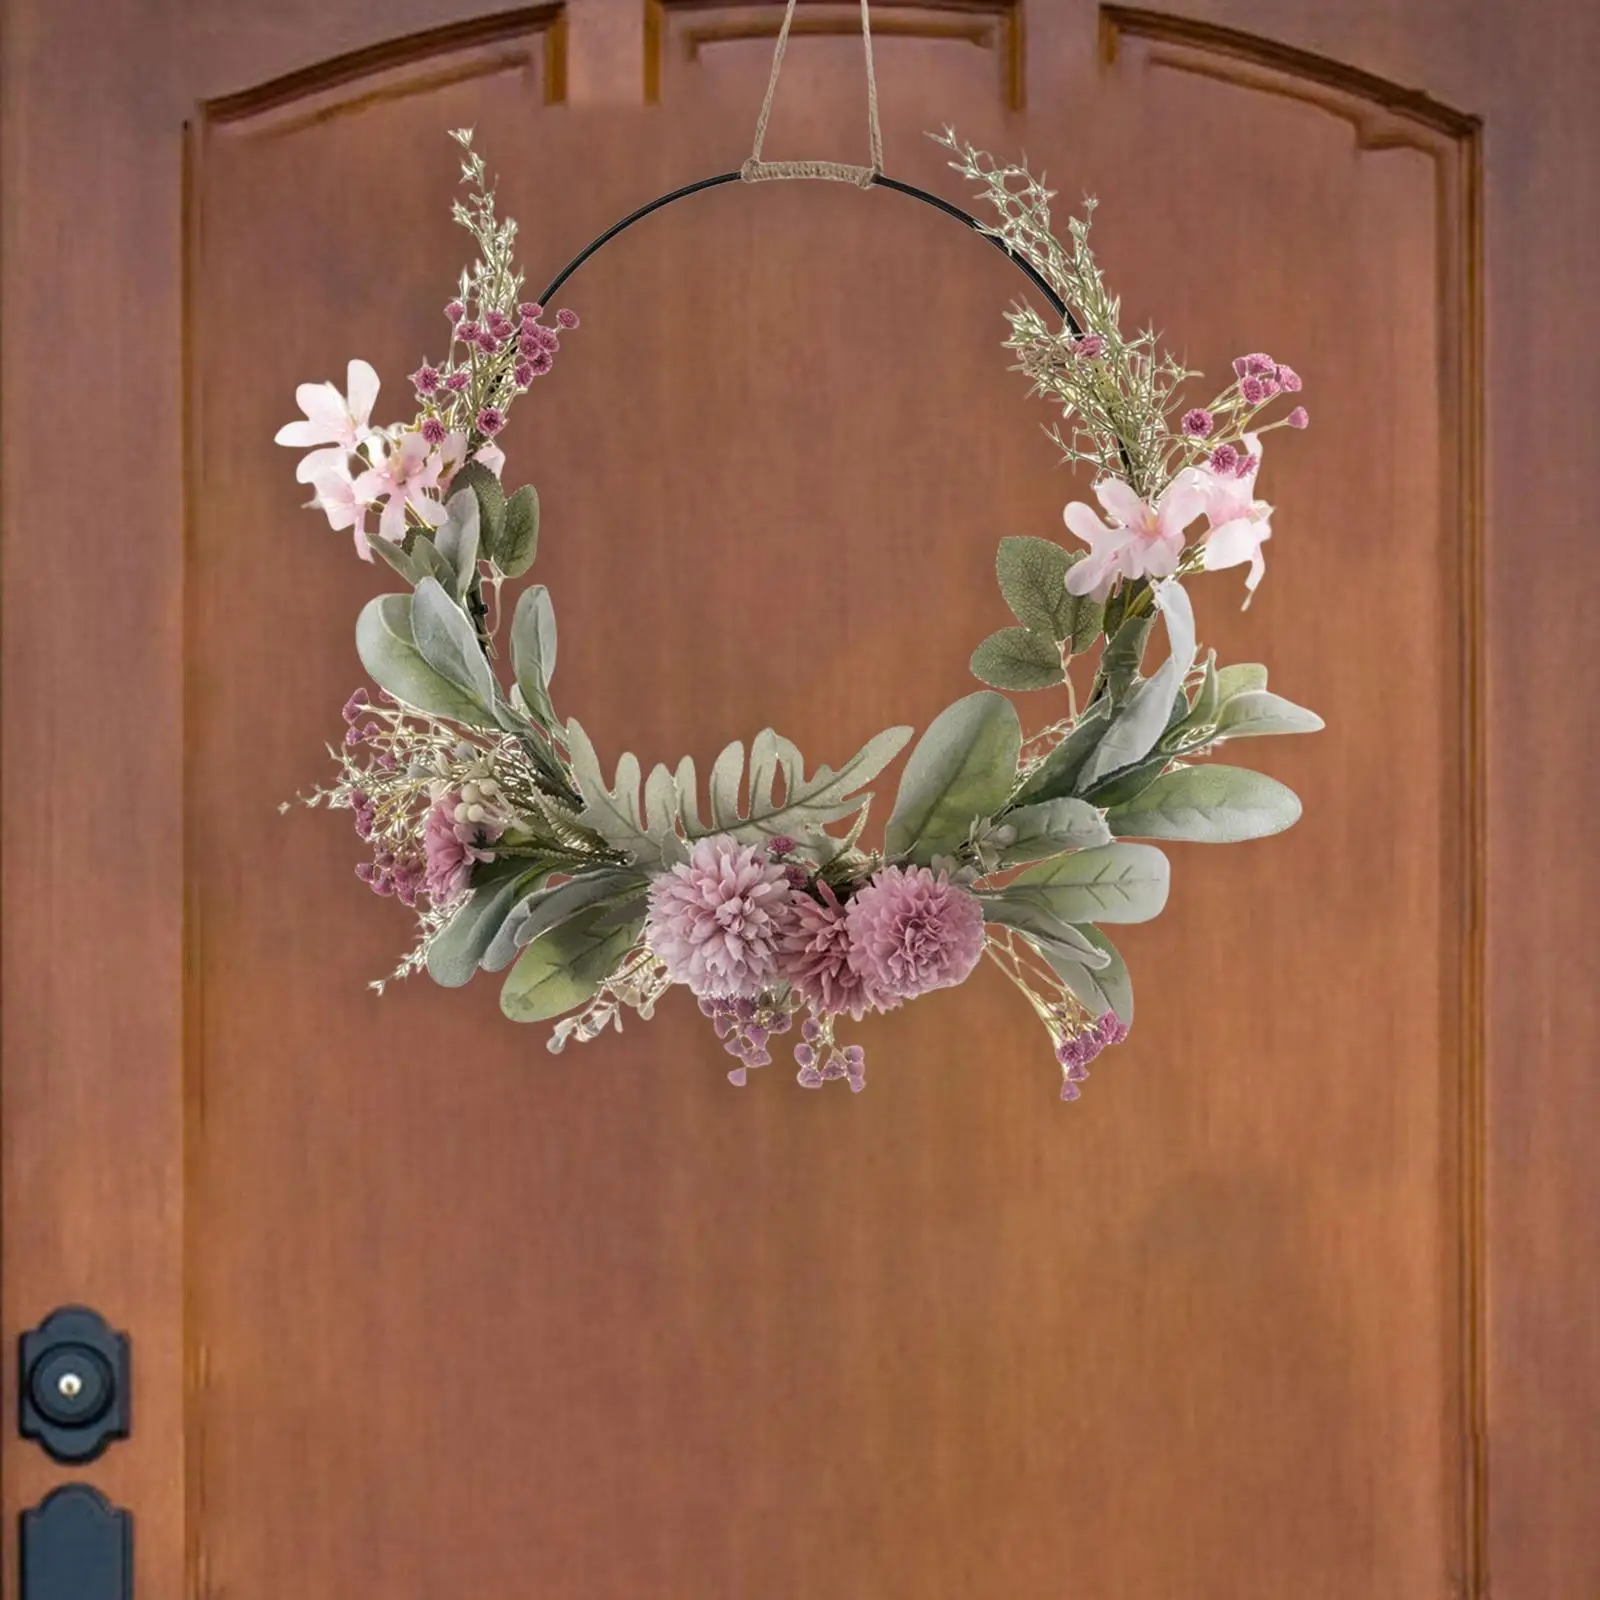 Hanging Door Wreath Handcrafted Photography Props Garlands Ornament Centerpieces Garland for Front Door Home Yard Decor Wedding